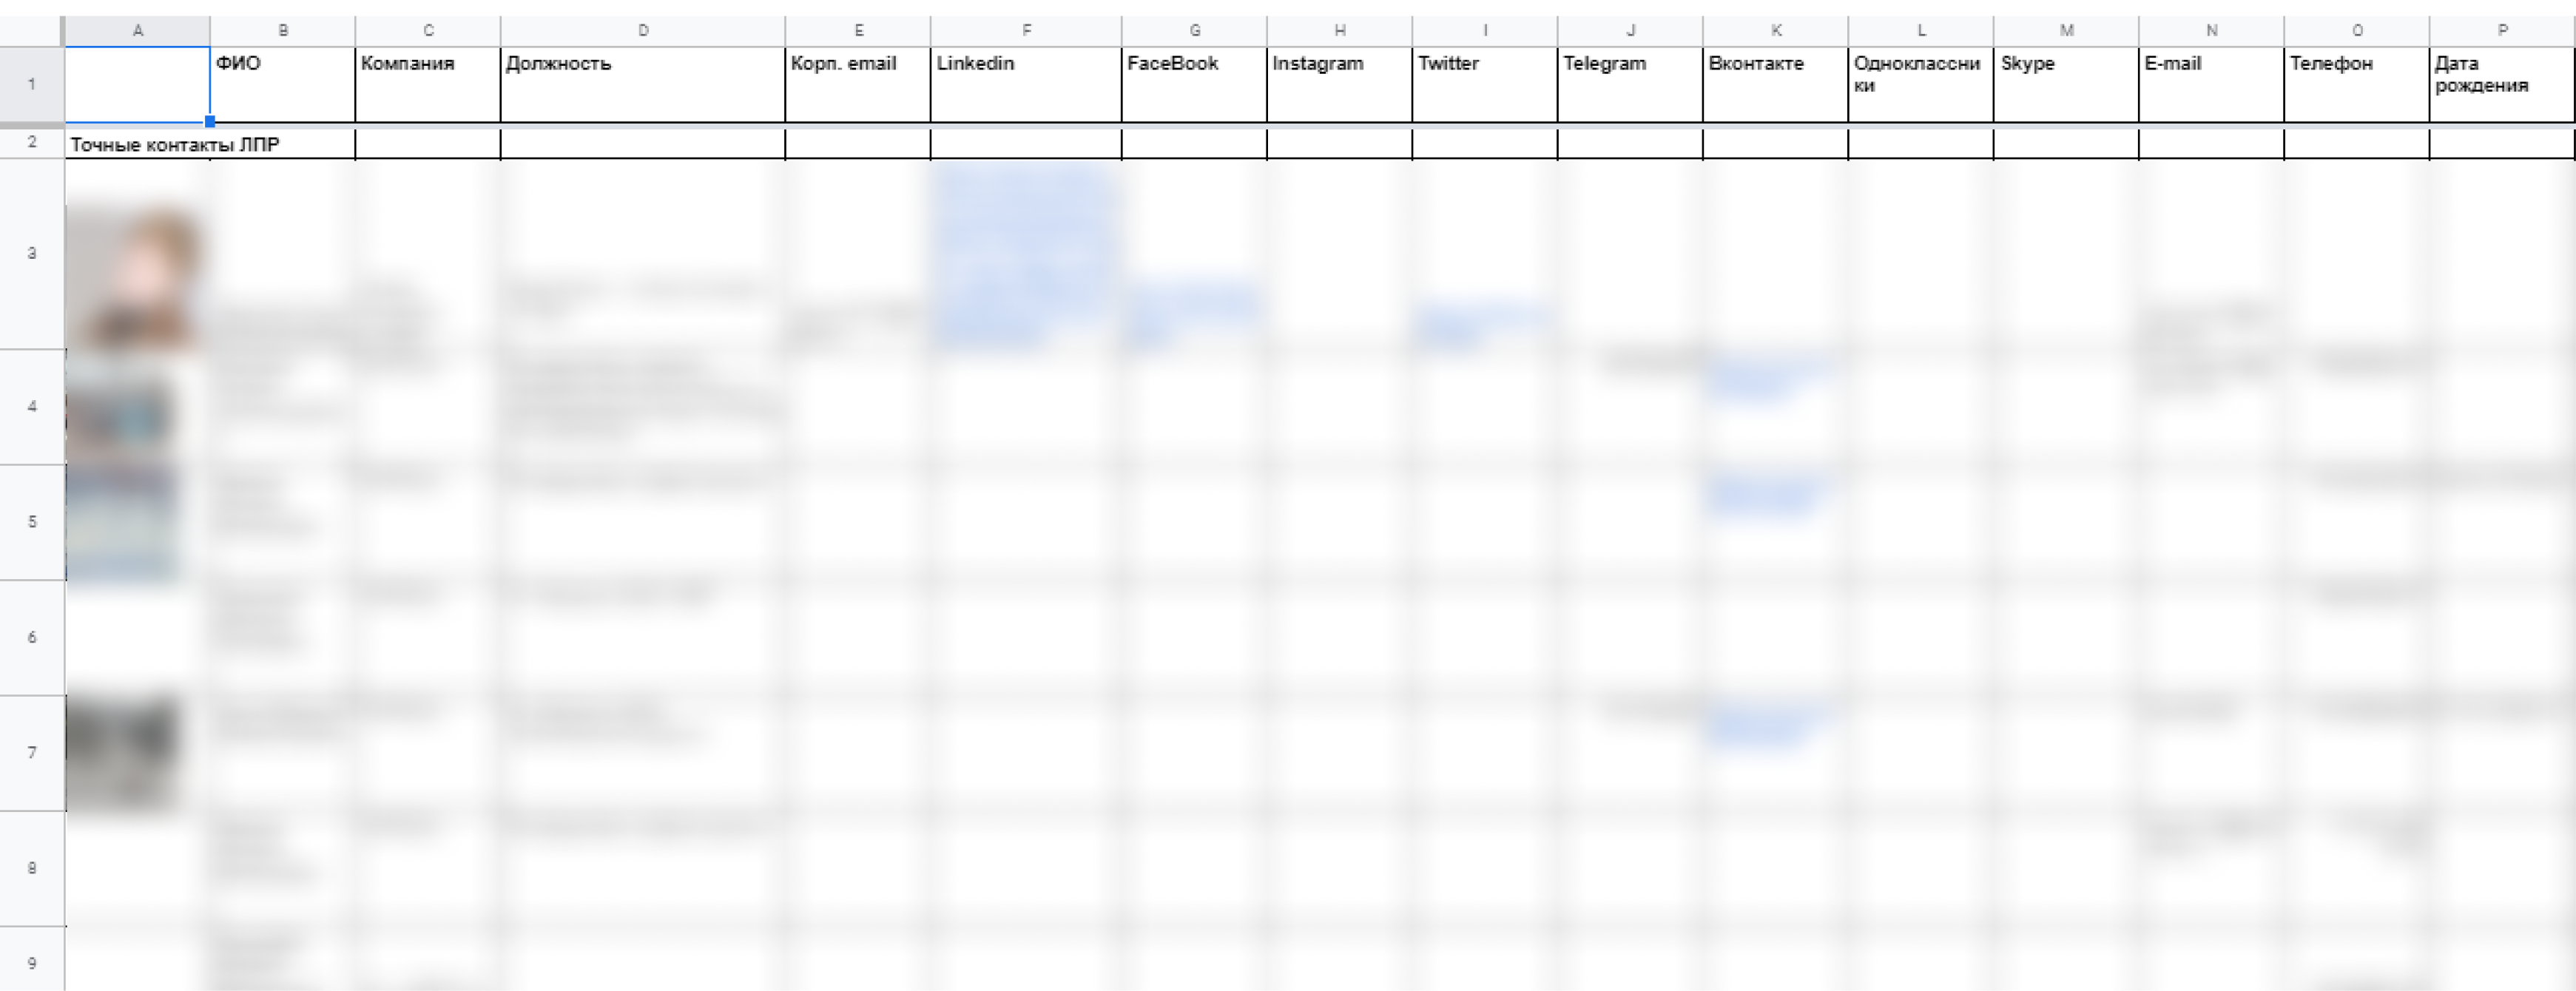 Скриншот таблицы с данными ЛПРов